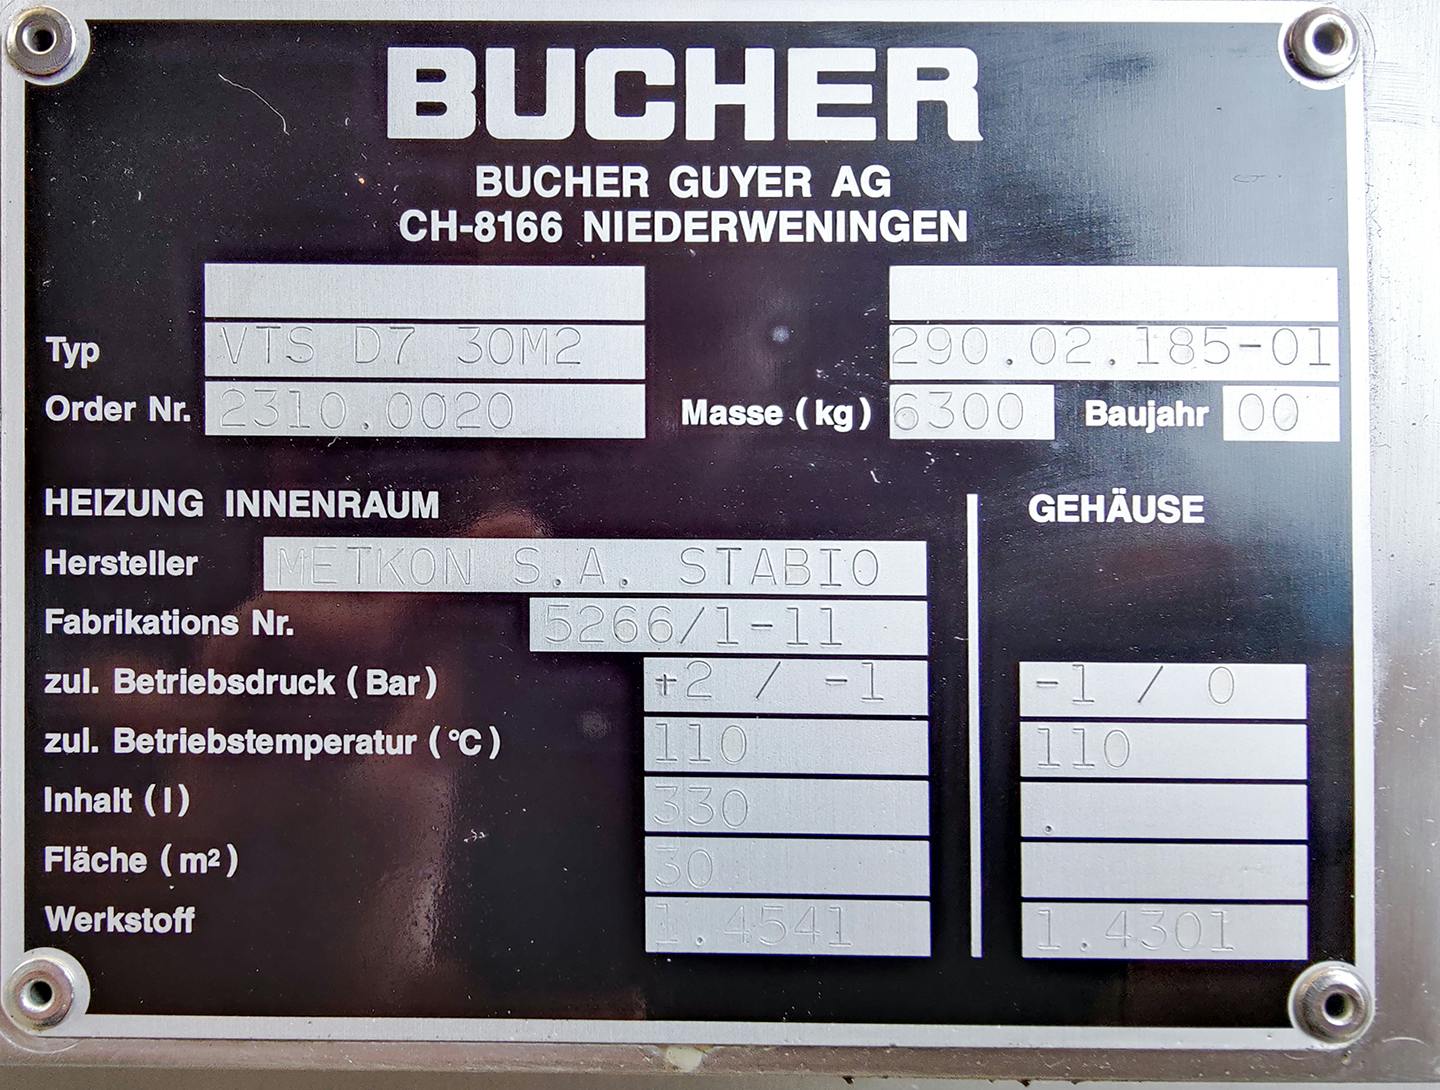 Bucher VTS-D7 30m2 - Séchoir à plateaux - image 8